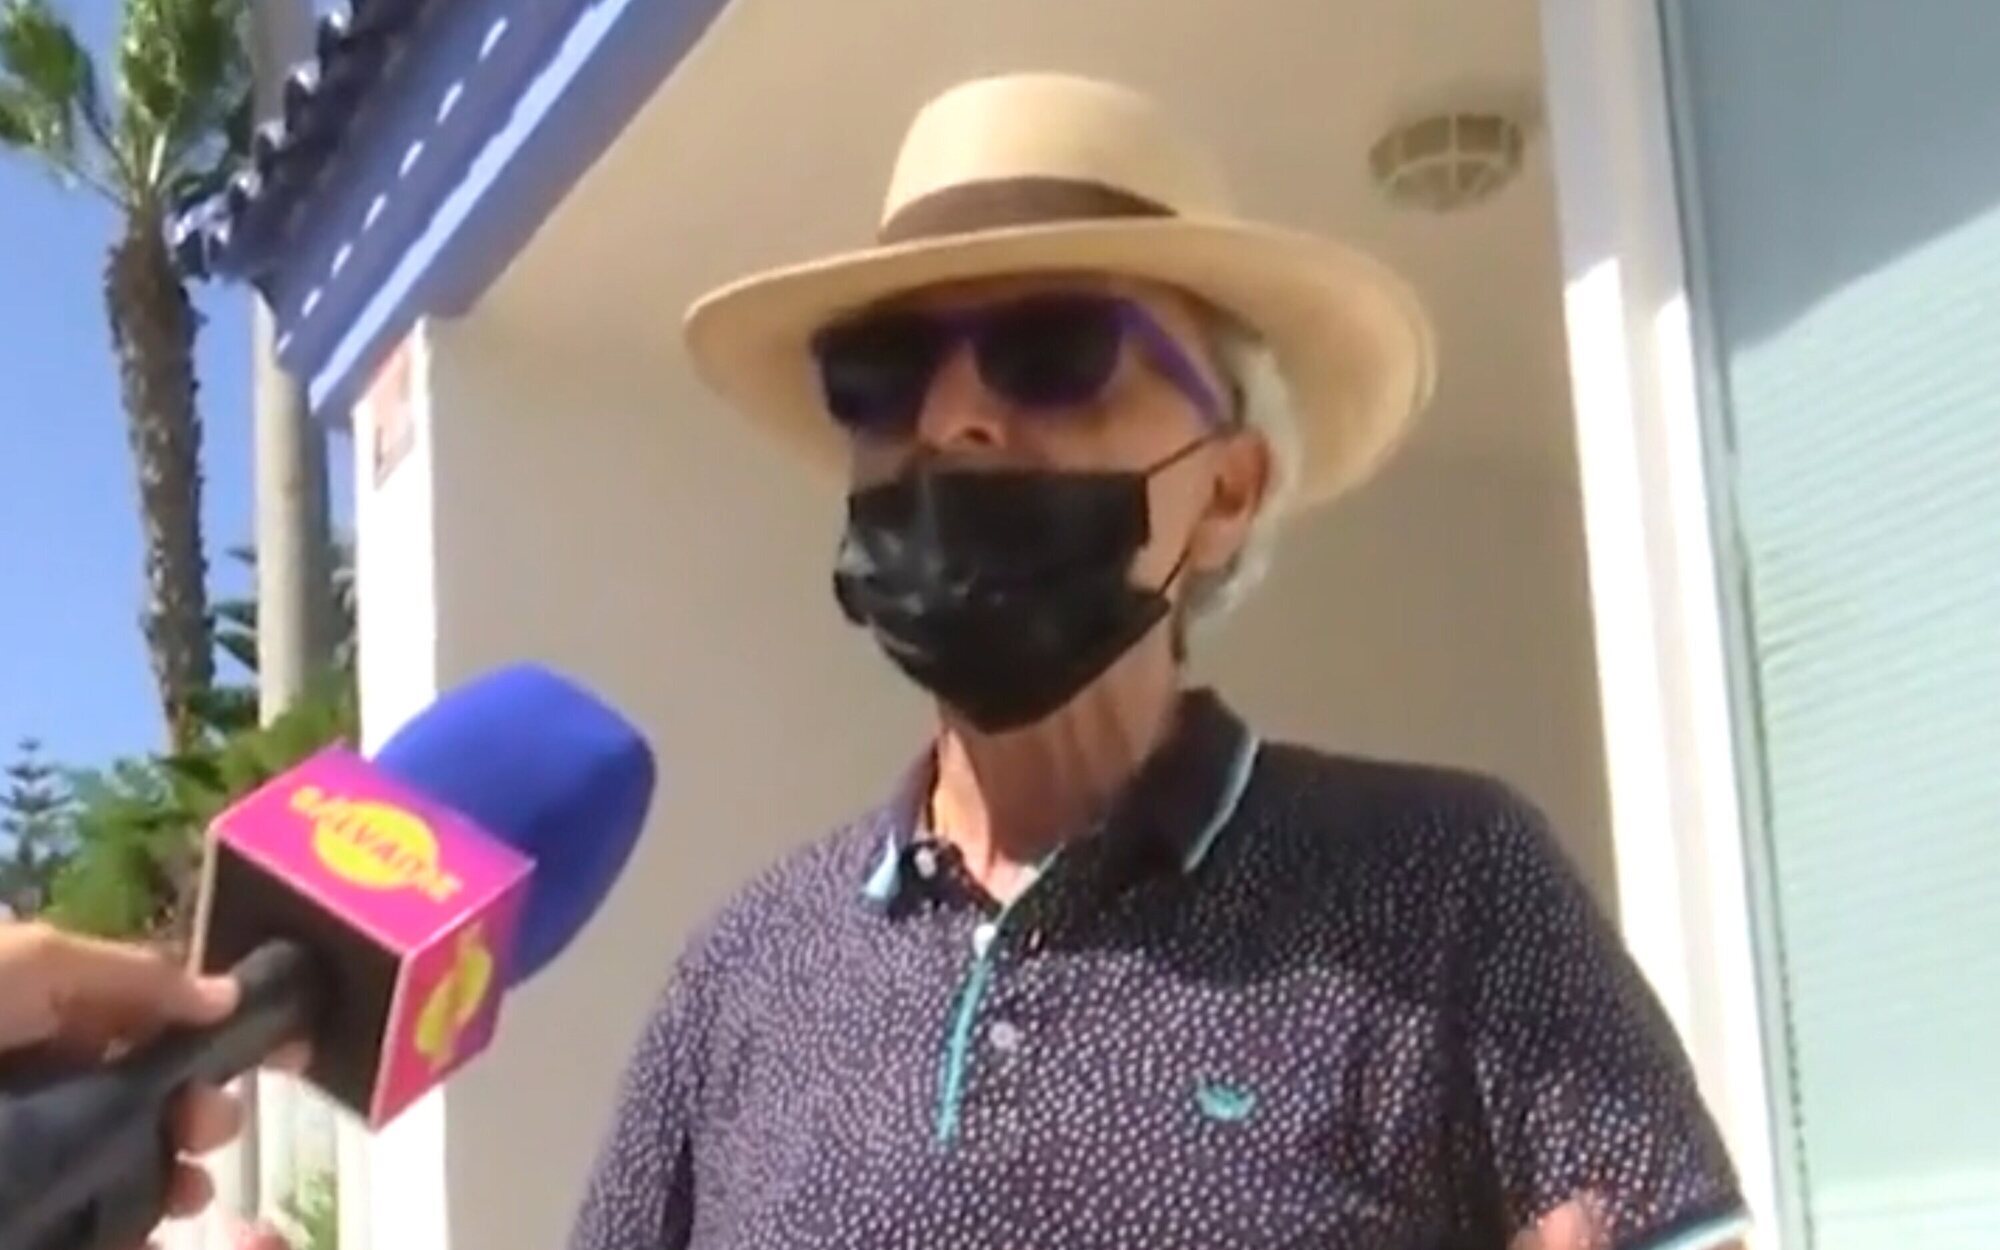 Ortega Cano y su nuevo enfado monumental con 'Sálvame' a las puertas de su casa: "¡No tienen vergüenza!"